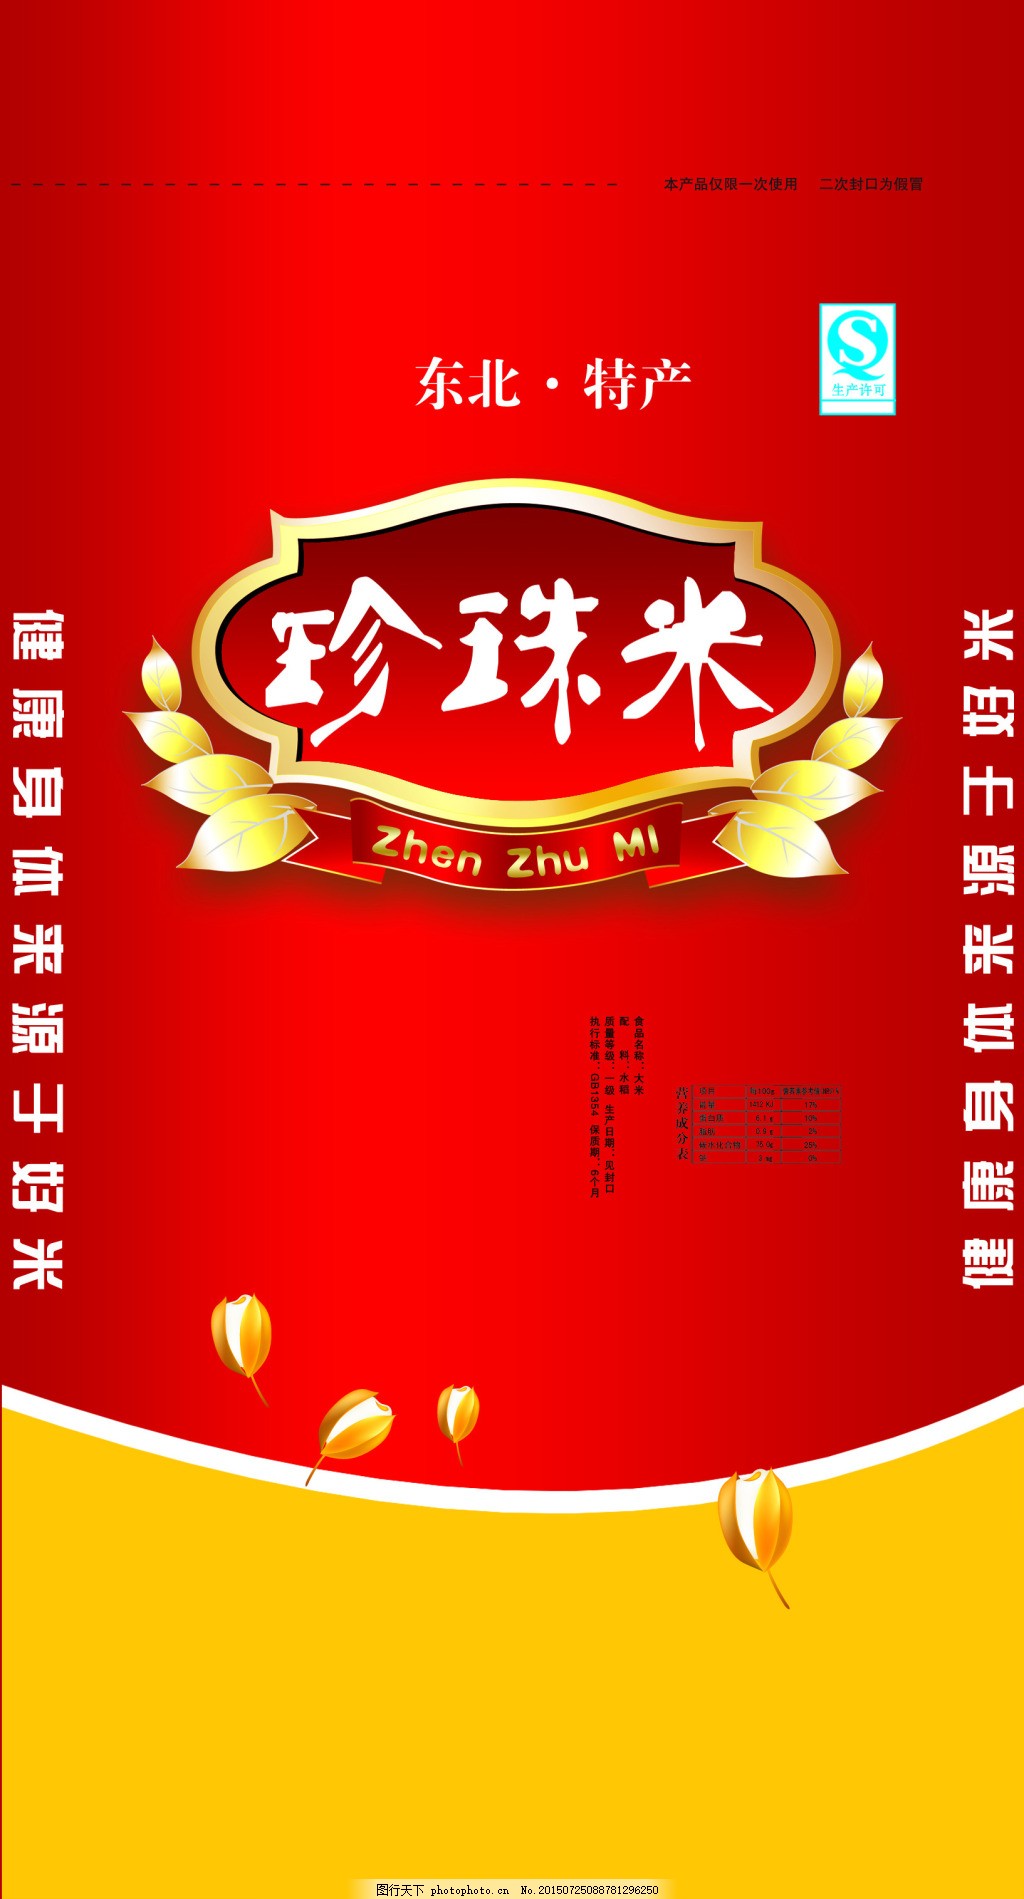 北大荒 东北珍珠米 | BDH Pearl Rice 5kg - HappyGo Asian Market